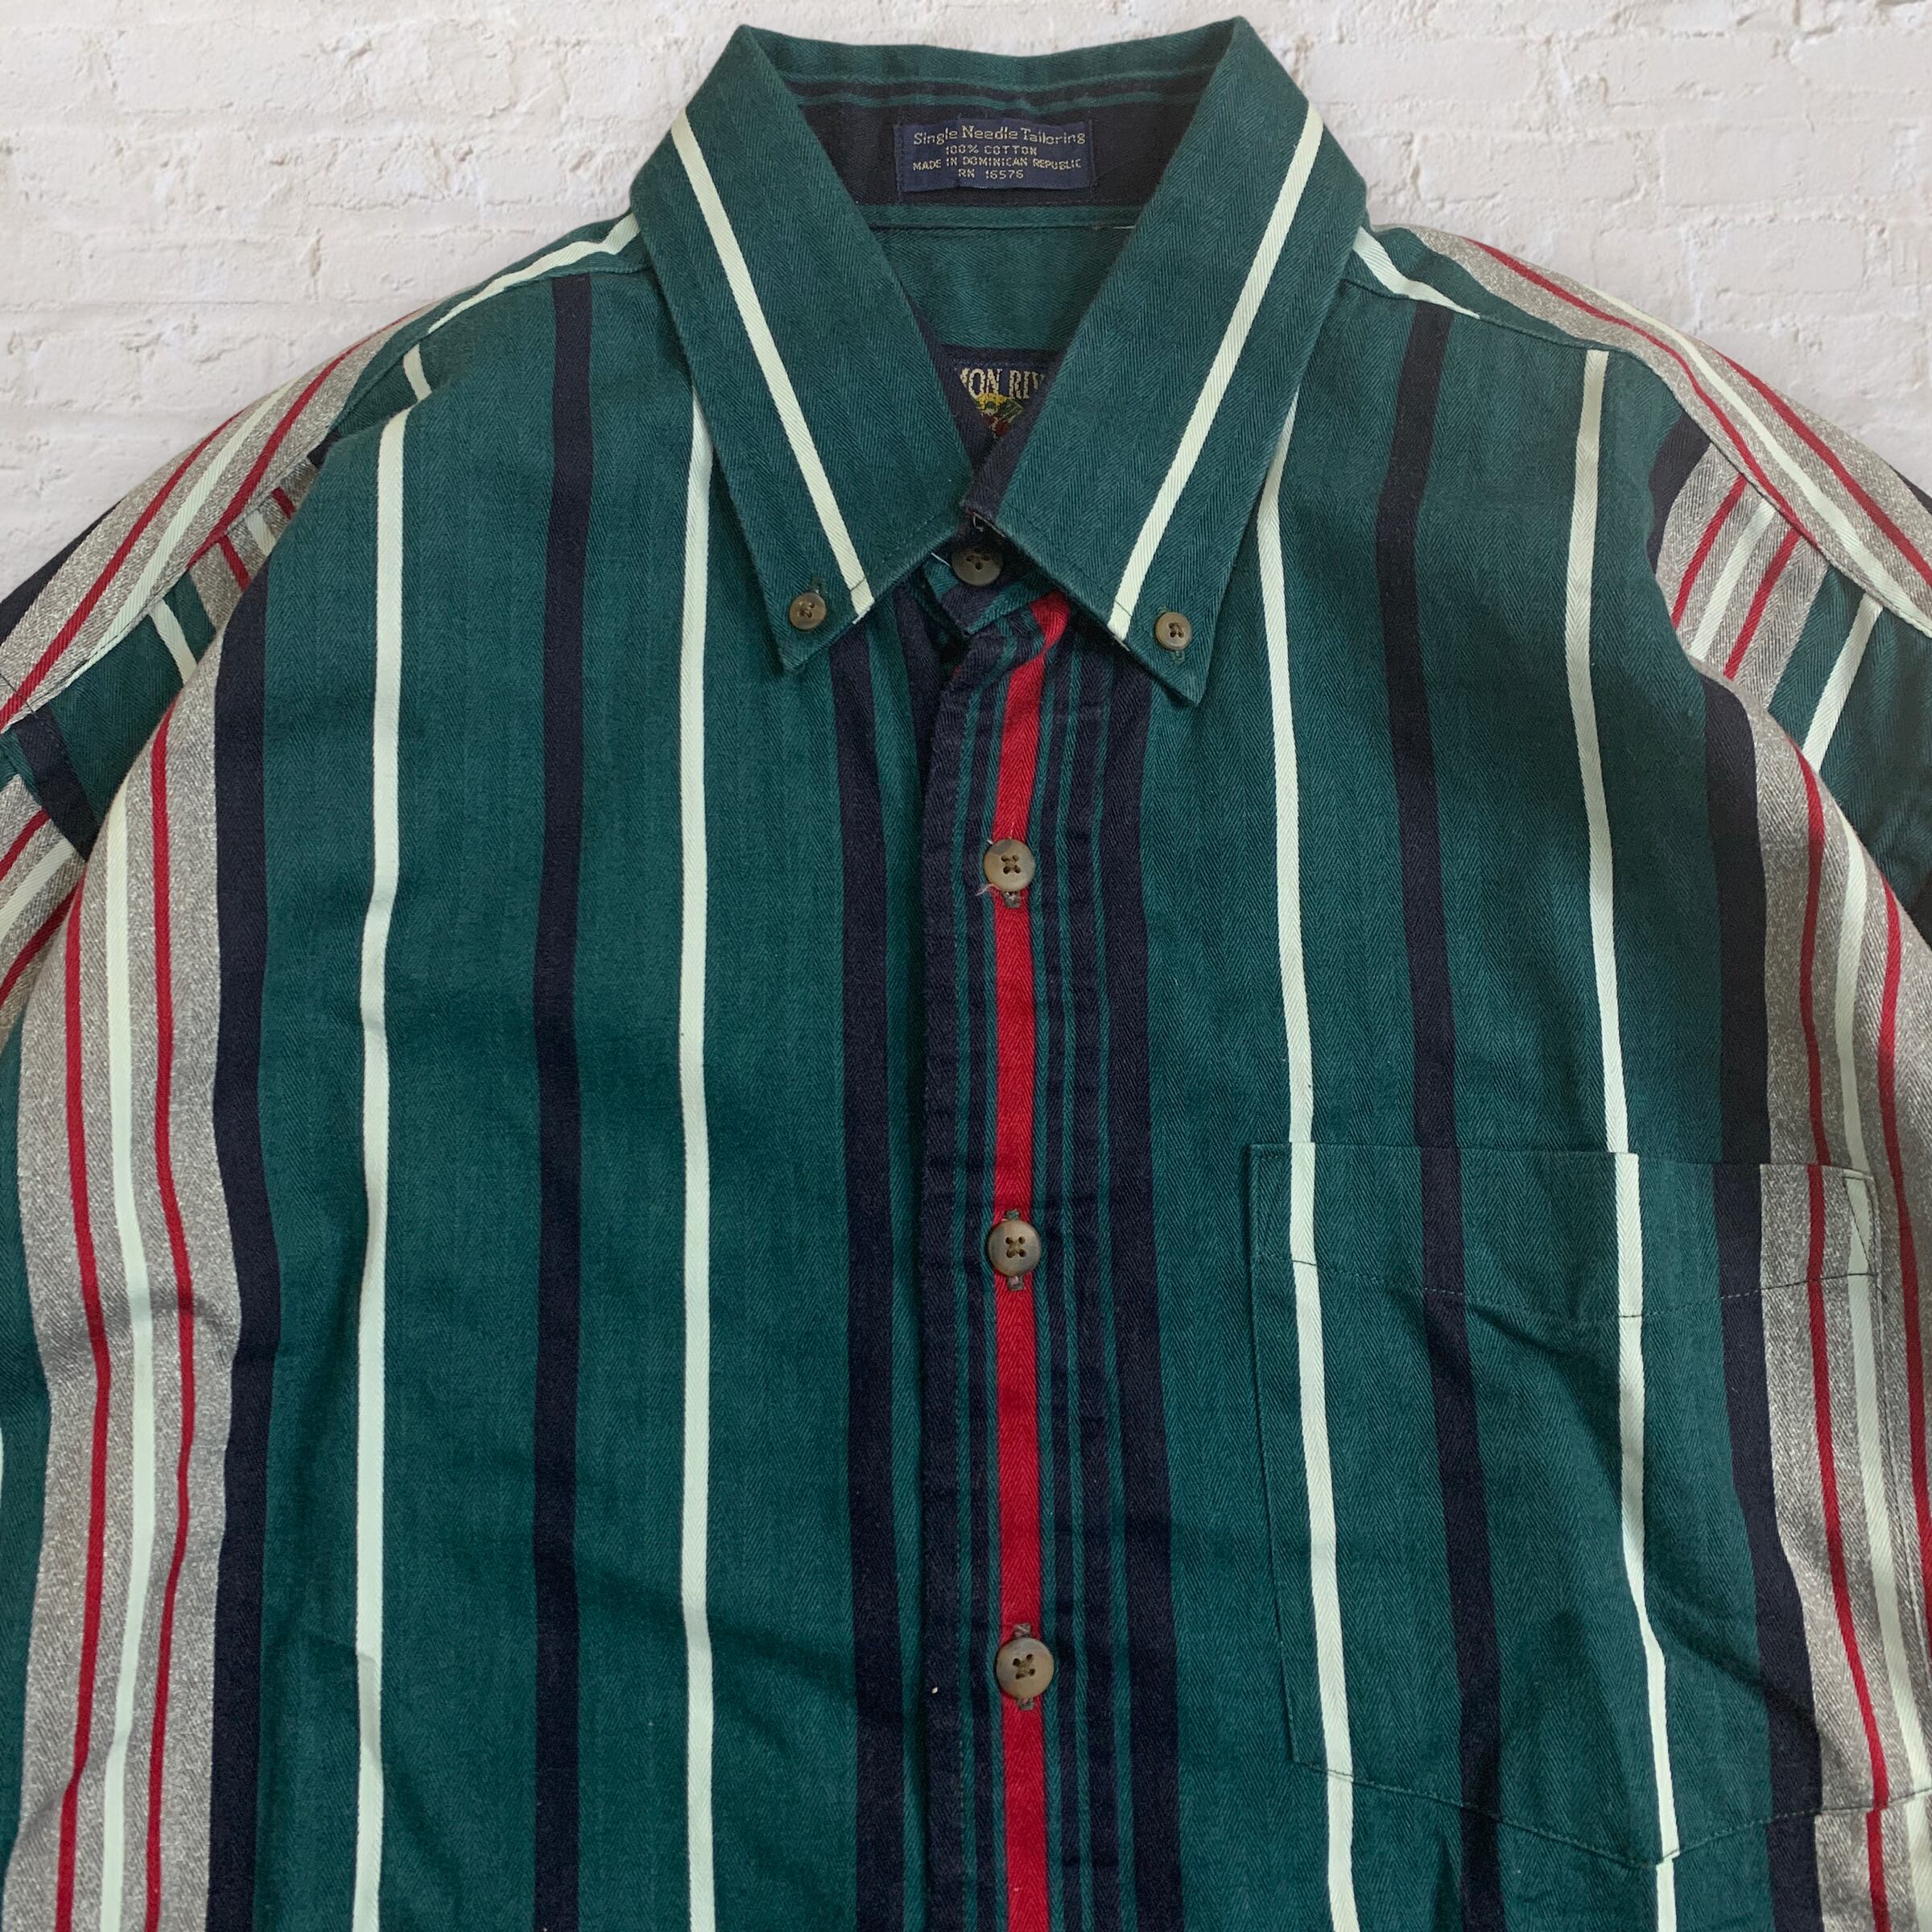 90s vintage oversize shirt